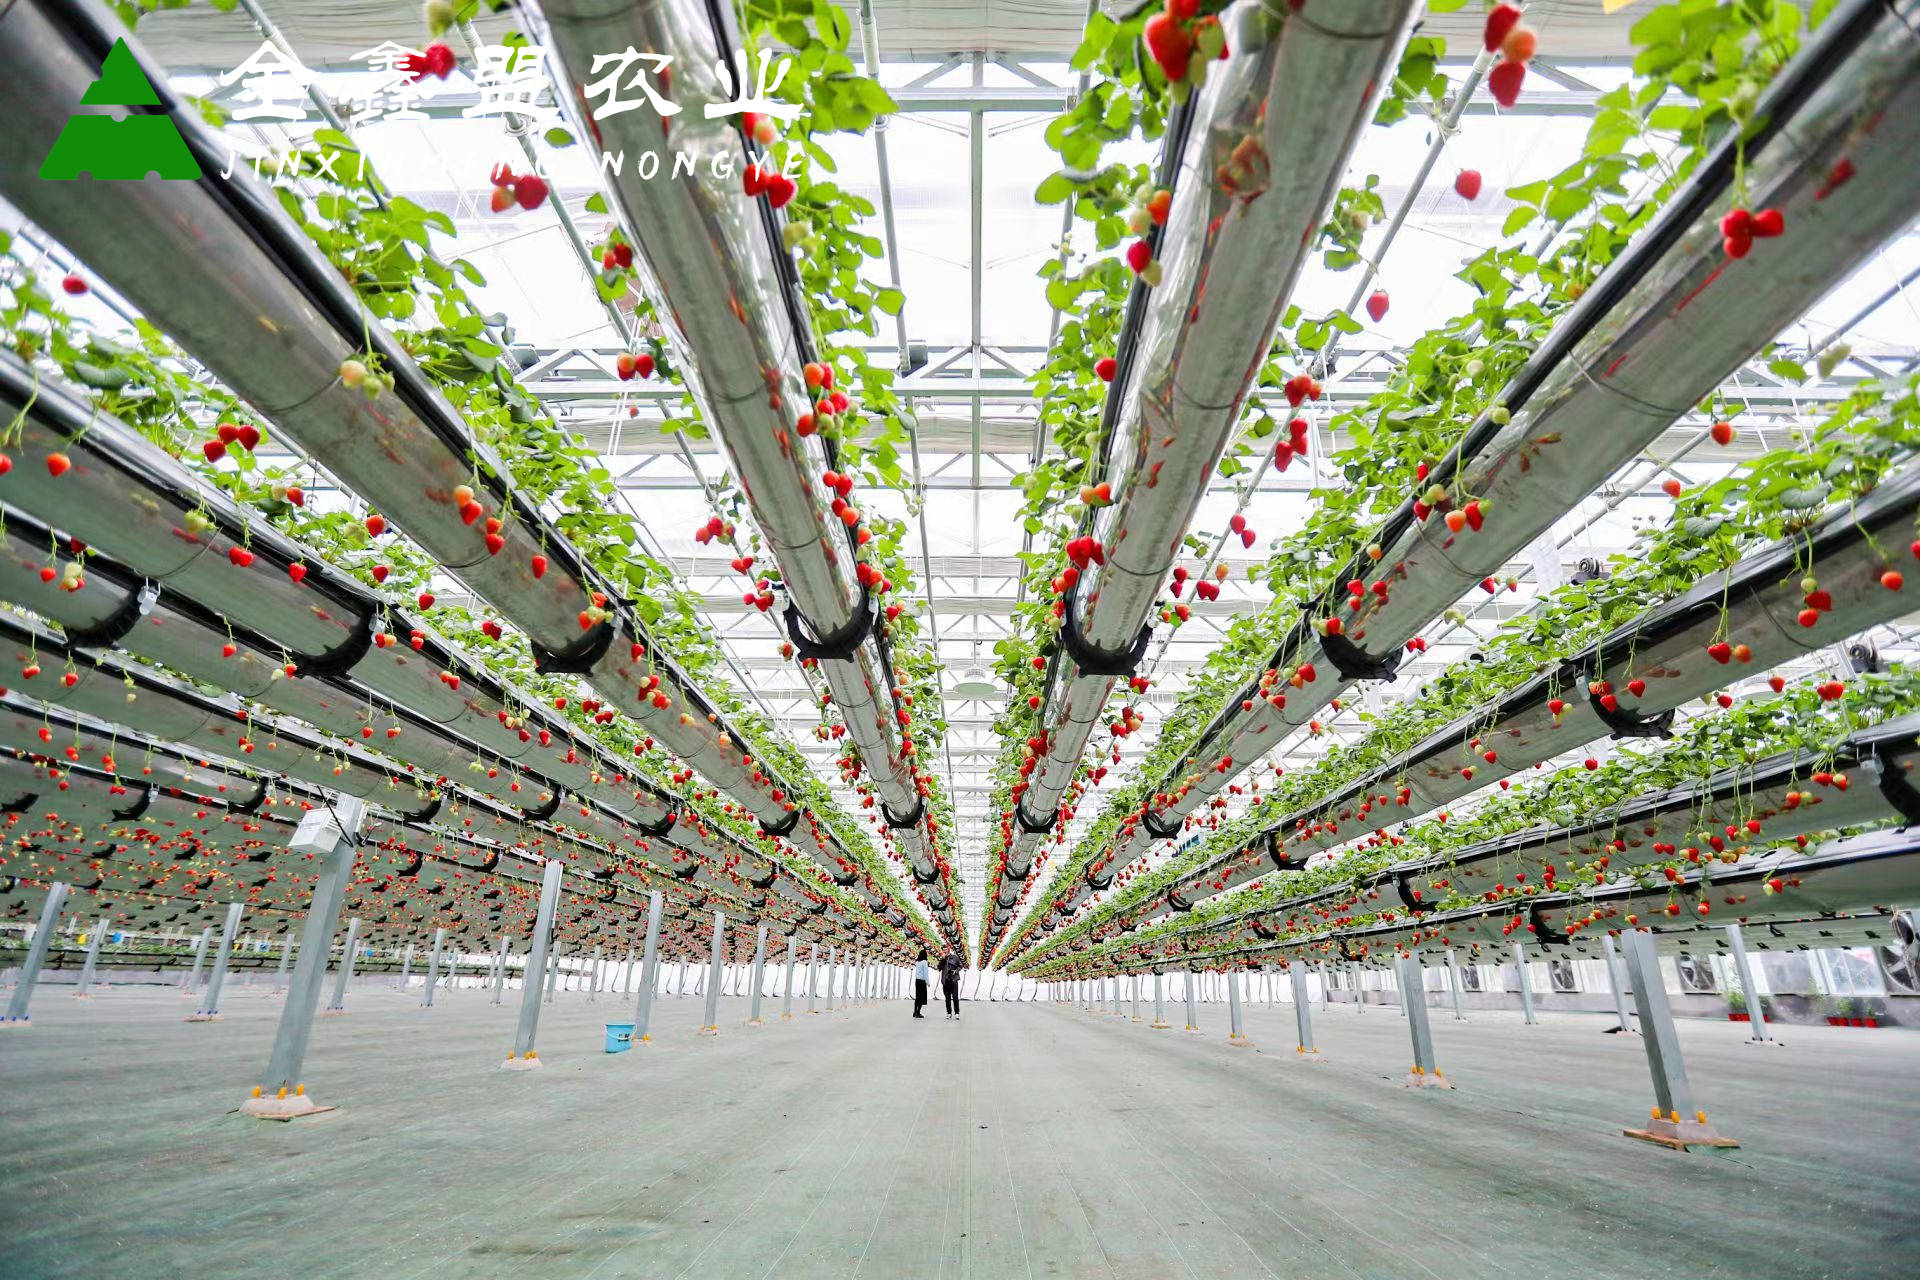 金鑫盟农业探秘空中升降草莓种植系统:造价与选材关键因素